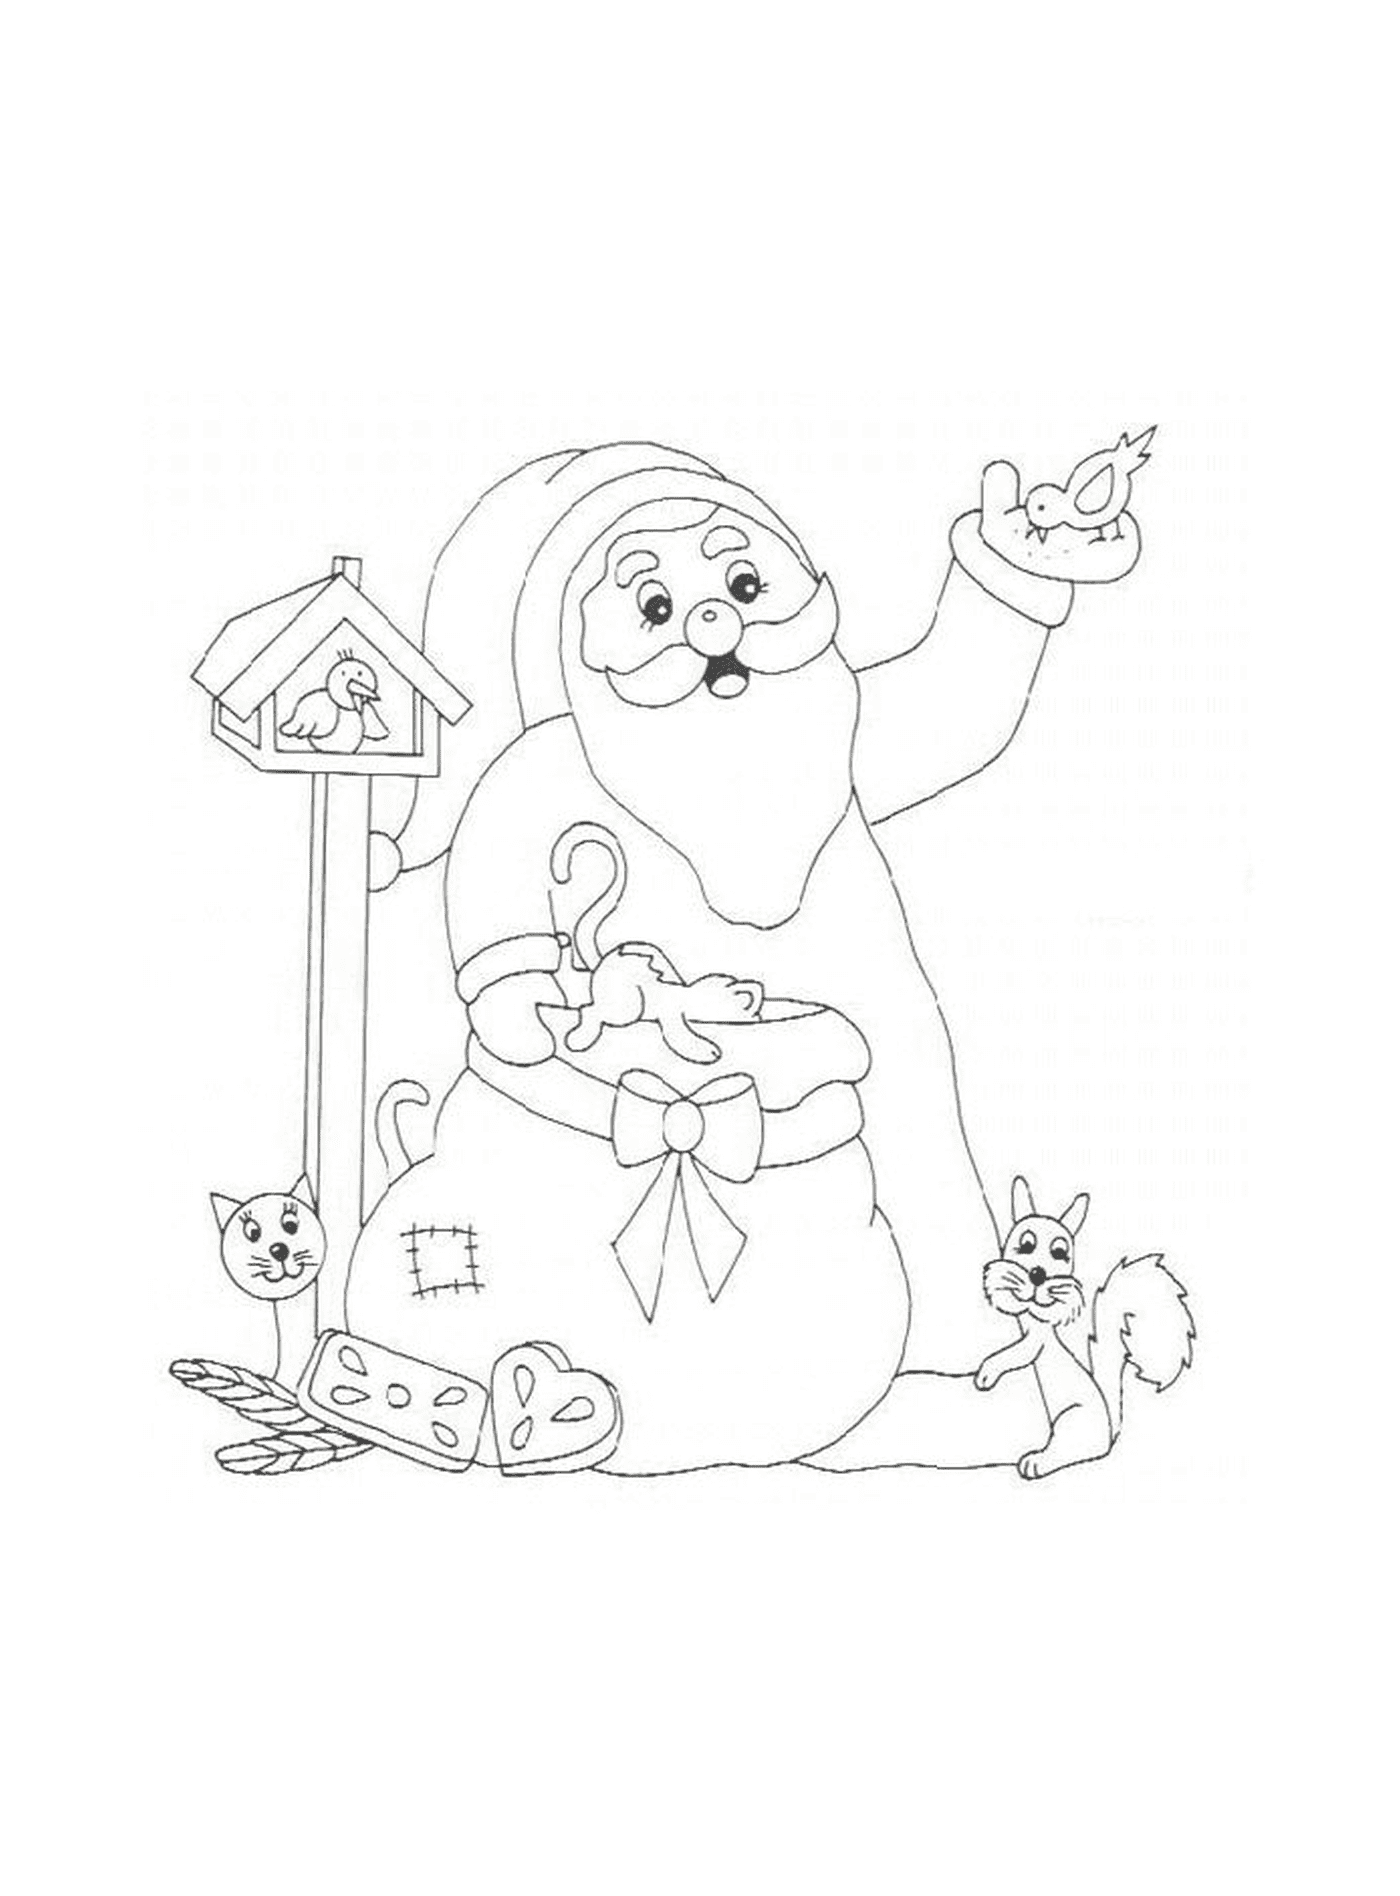  Santa with a squirrel 